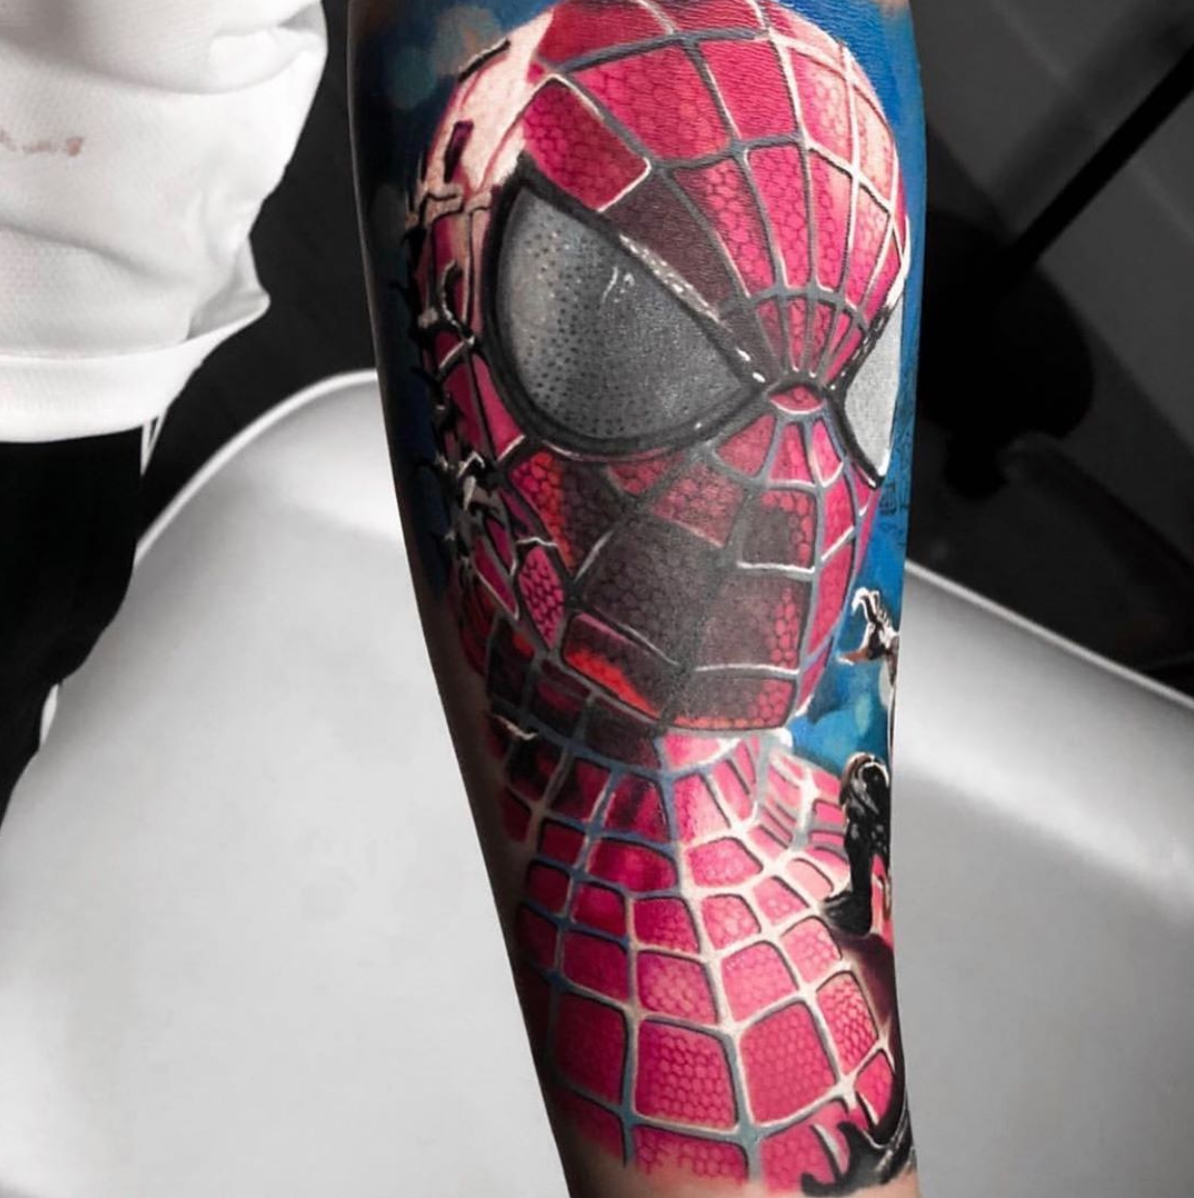 Maślak Tattoo - Old school Spider Man 🔥 - - - - - - - - - #tattoo #tatuaż  #tatuaz #tatuaje #tatts #tattooartist #tattoostyle #spiderman  #tattoolifestyle #oldschooltattoo #neotraditional #tattooart #oldschool  #polandtattoos #tattoomodel #